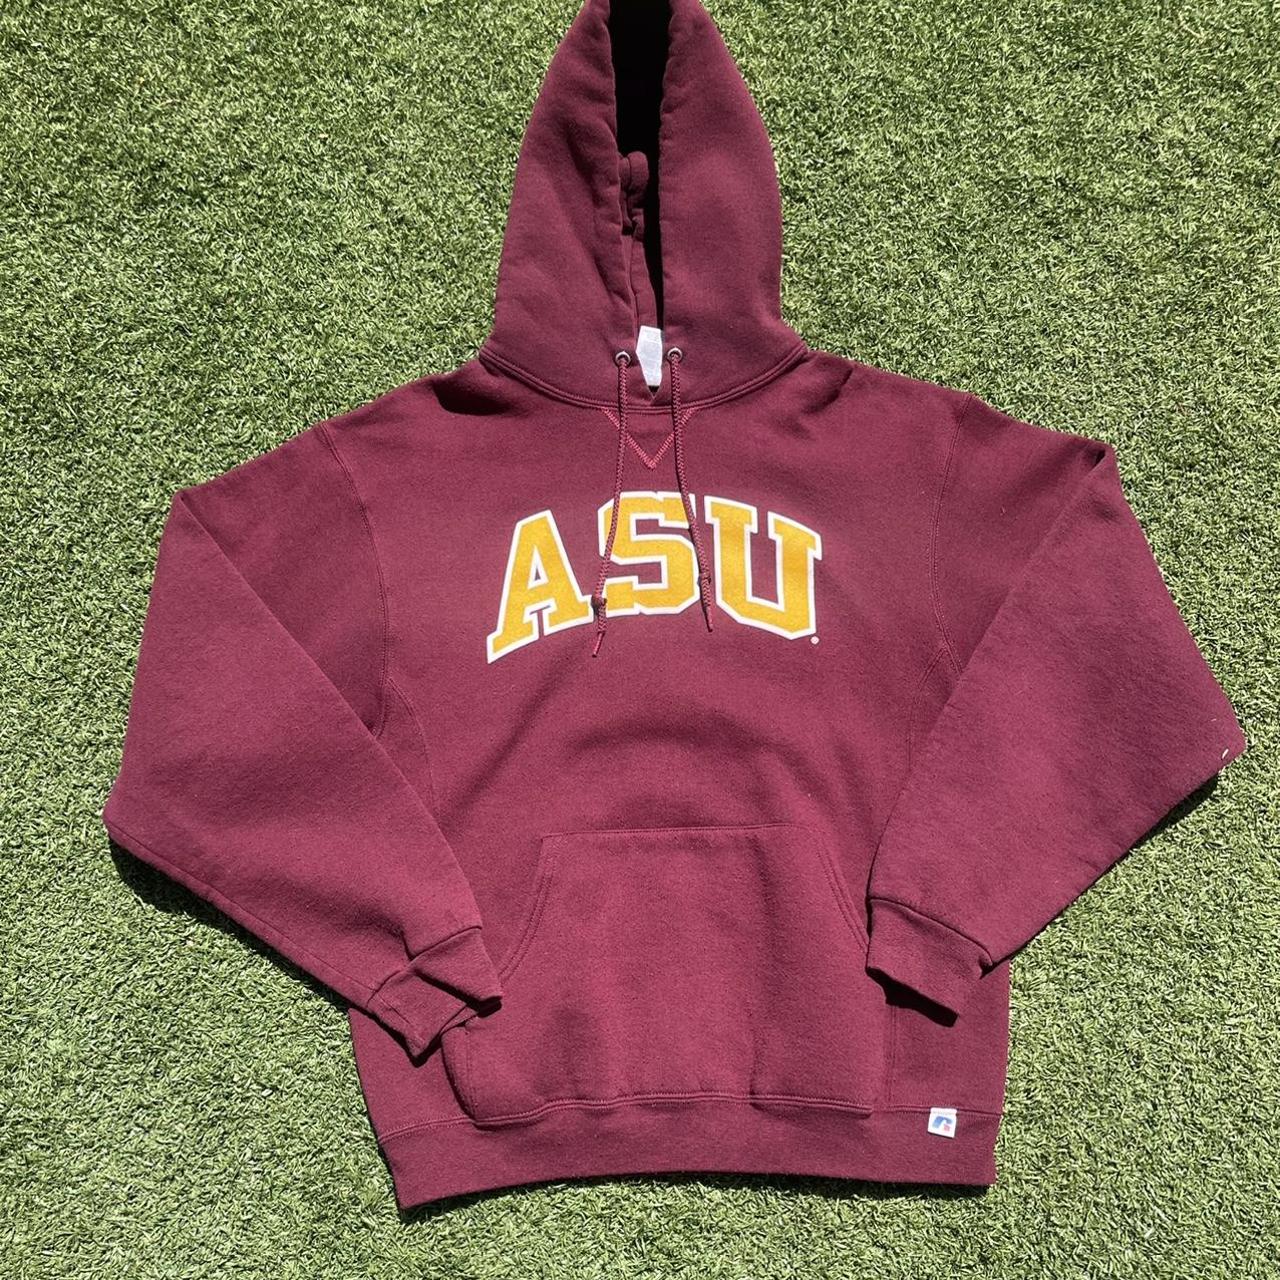 Vintage Russell ASU hoodie! Size Medium! Extremely... - Depop